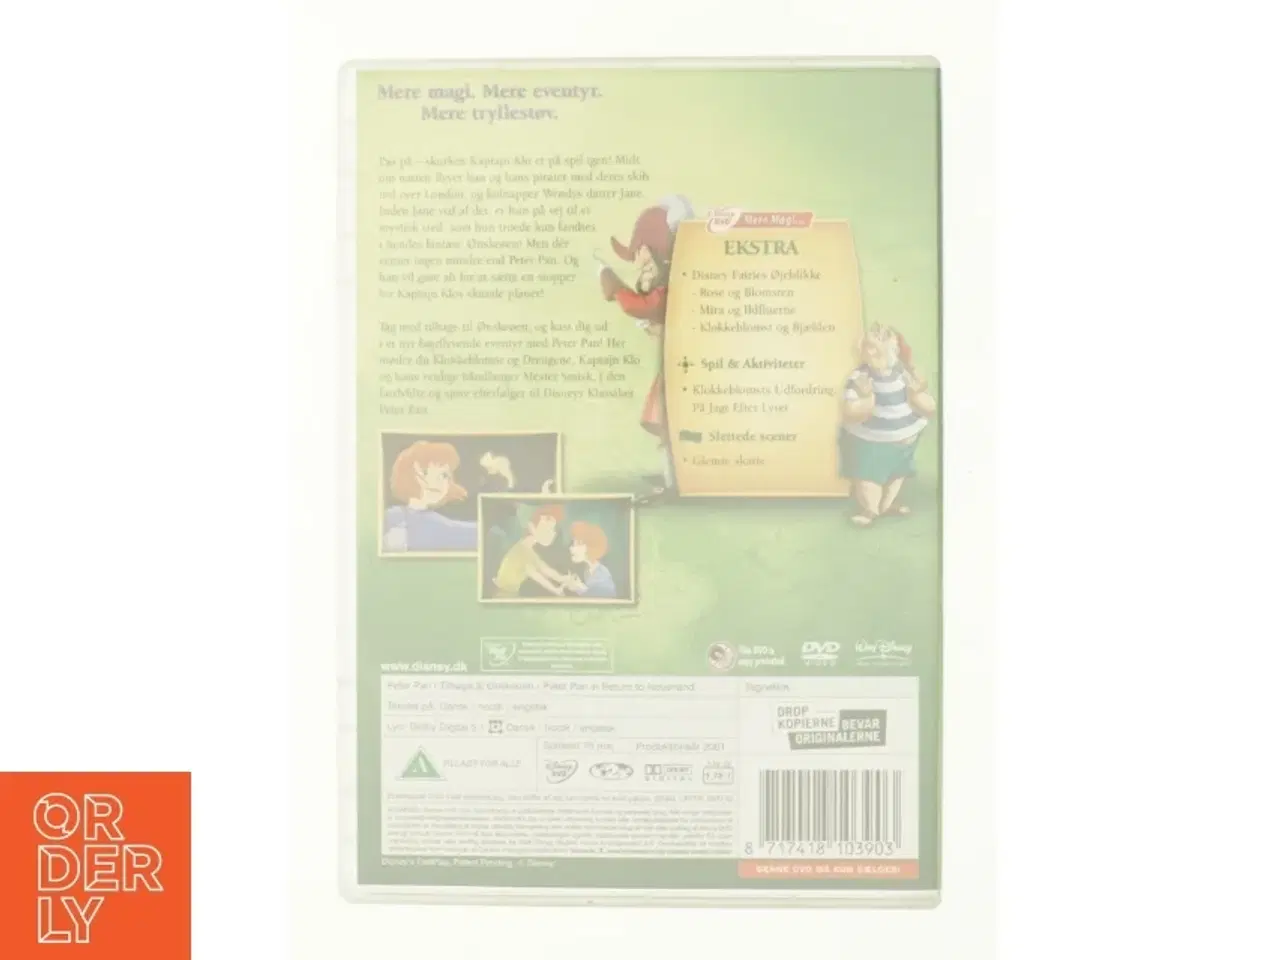 Billede 2 - Peter Pan - Tilbage til Ønskeøen (2002) [DVD] fra DVD